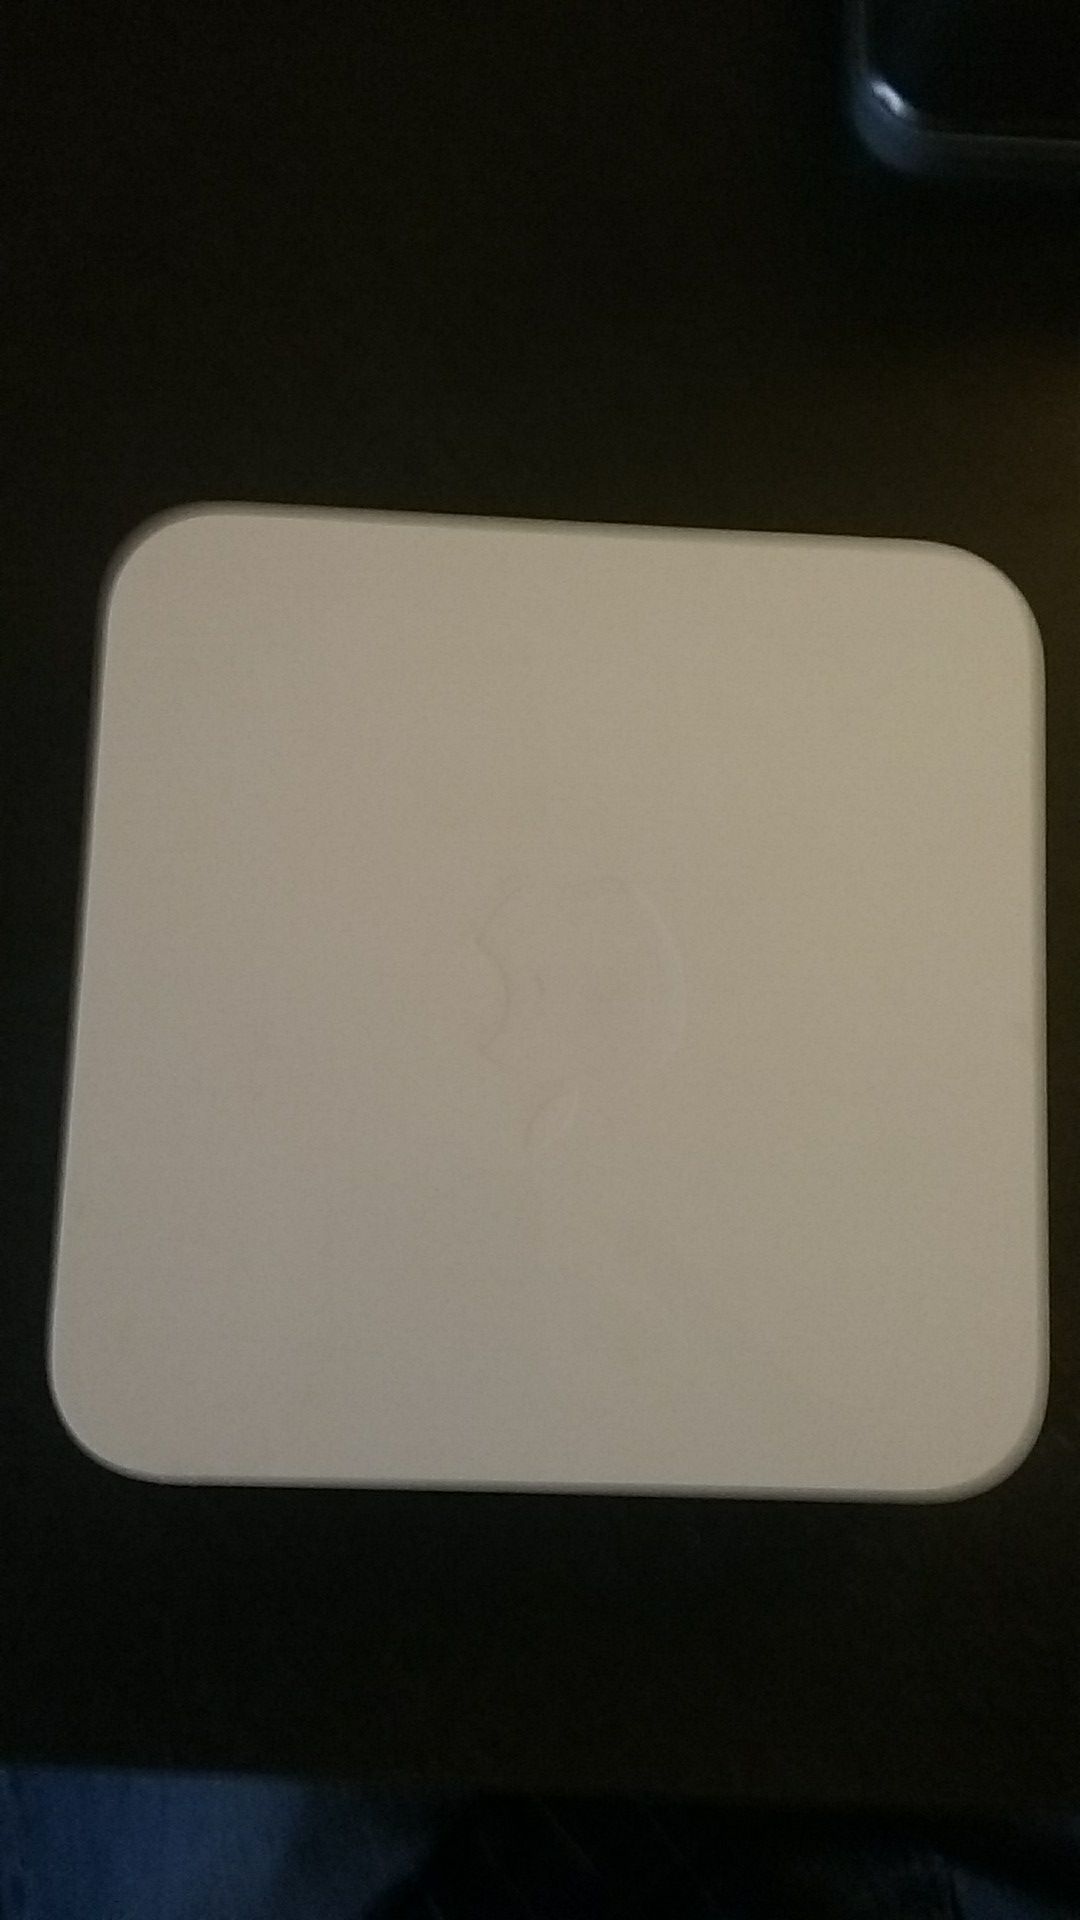 Apple surfboard model a1408 WiFi router